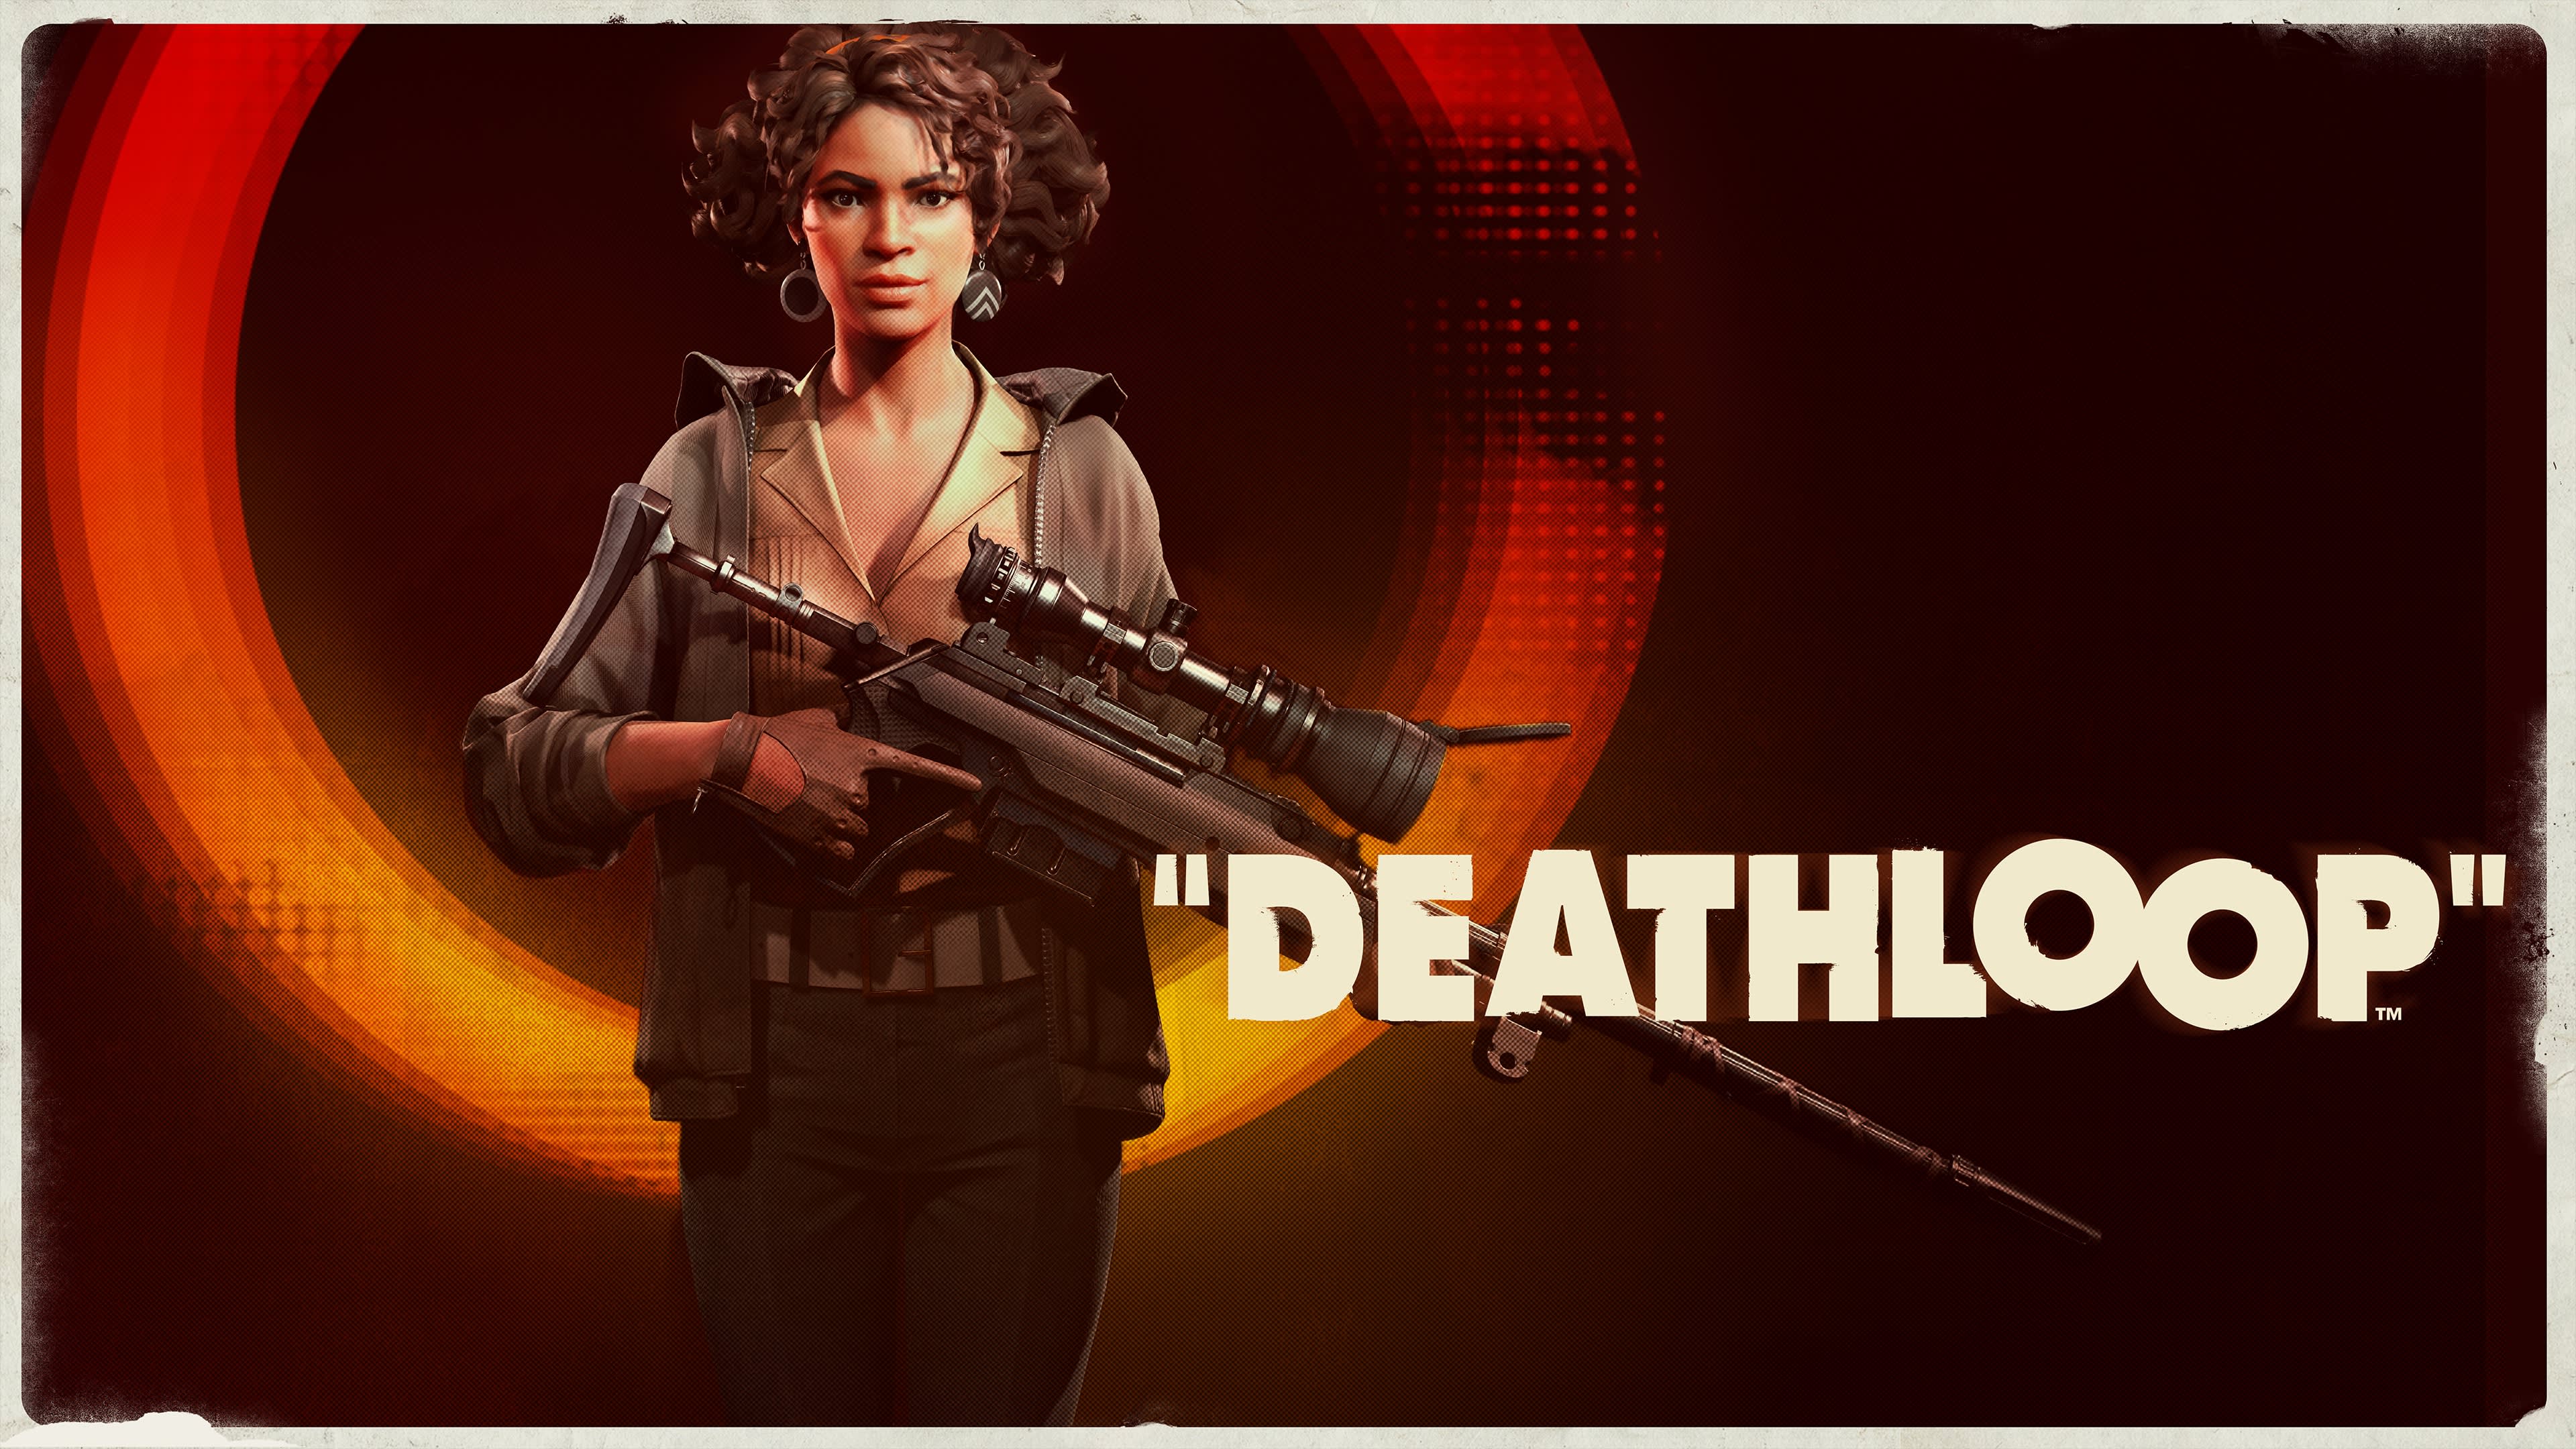 Umieranie w nieskończoność "Deathloop" - recenzja gry